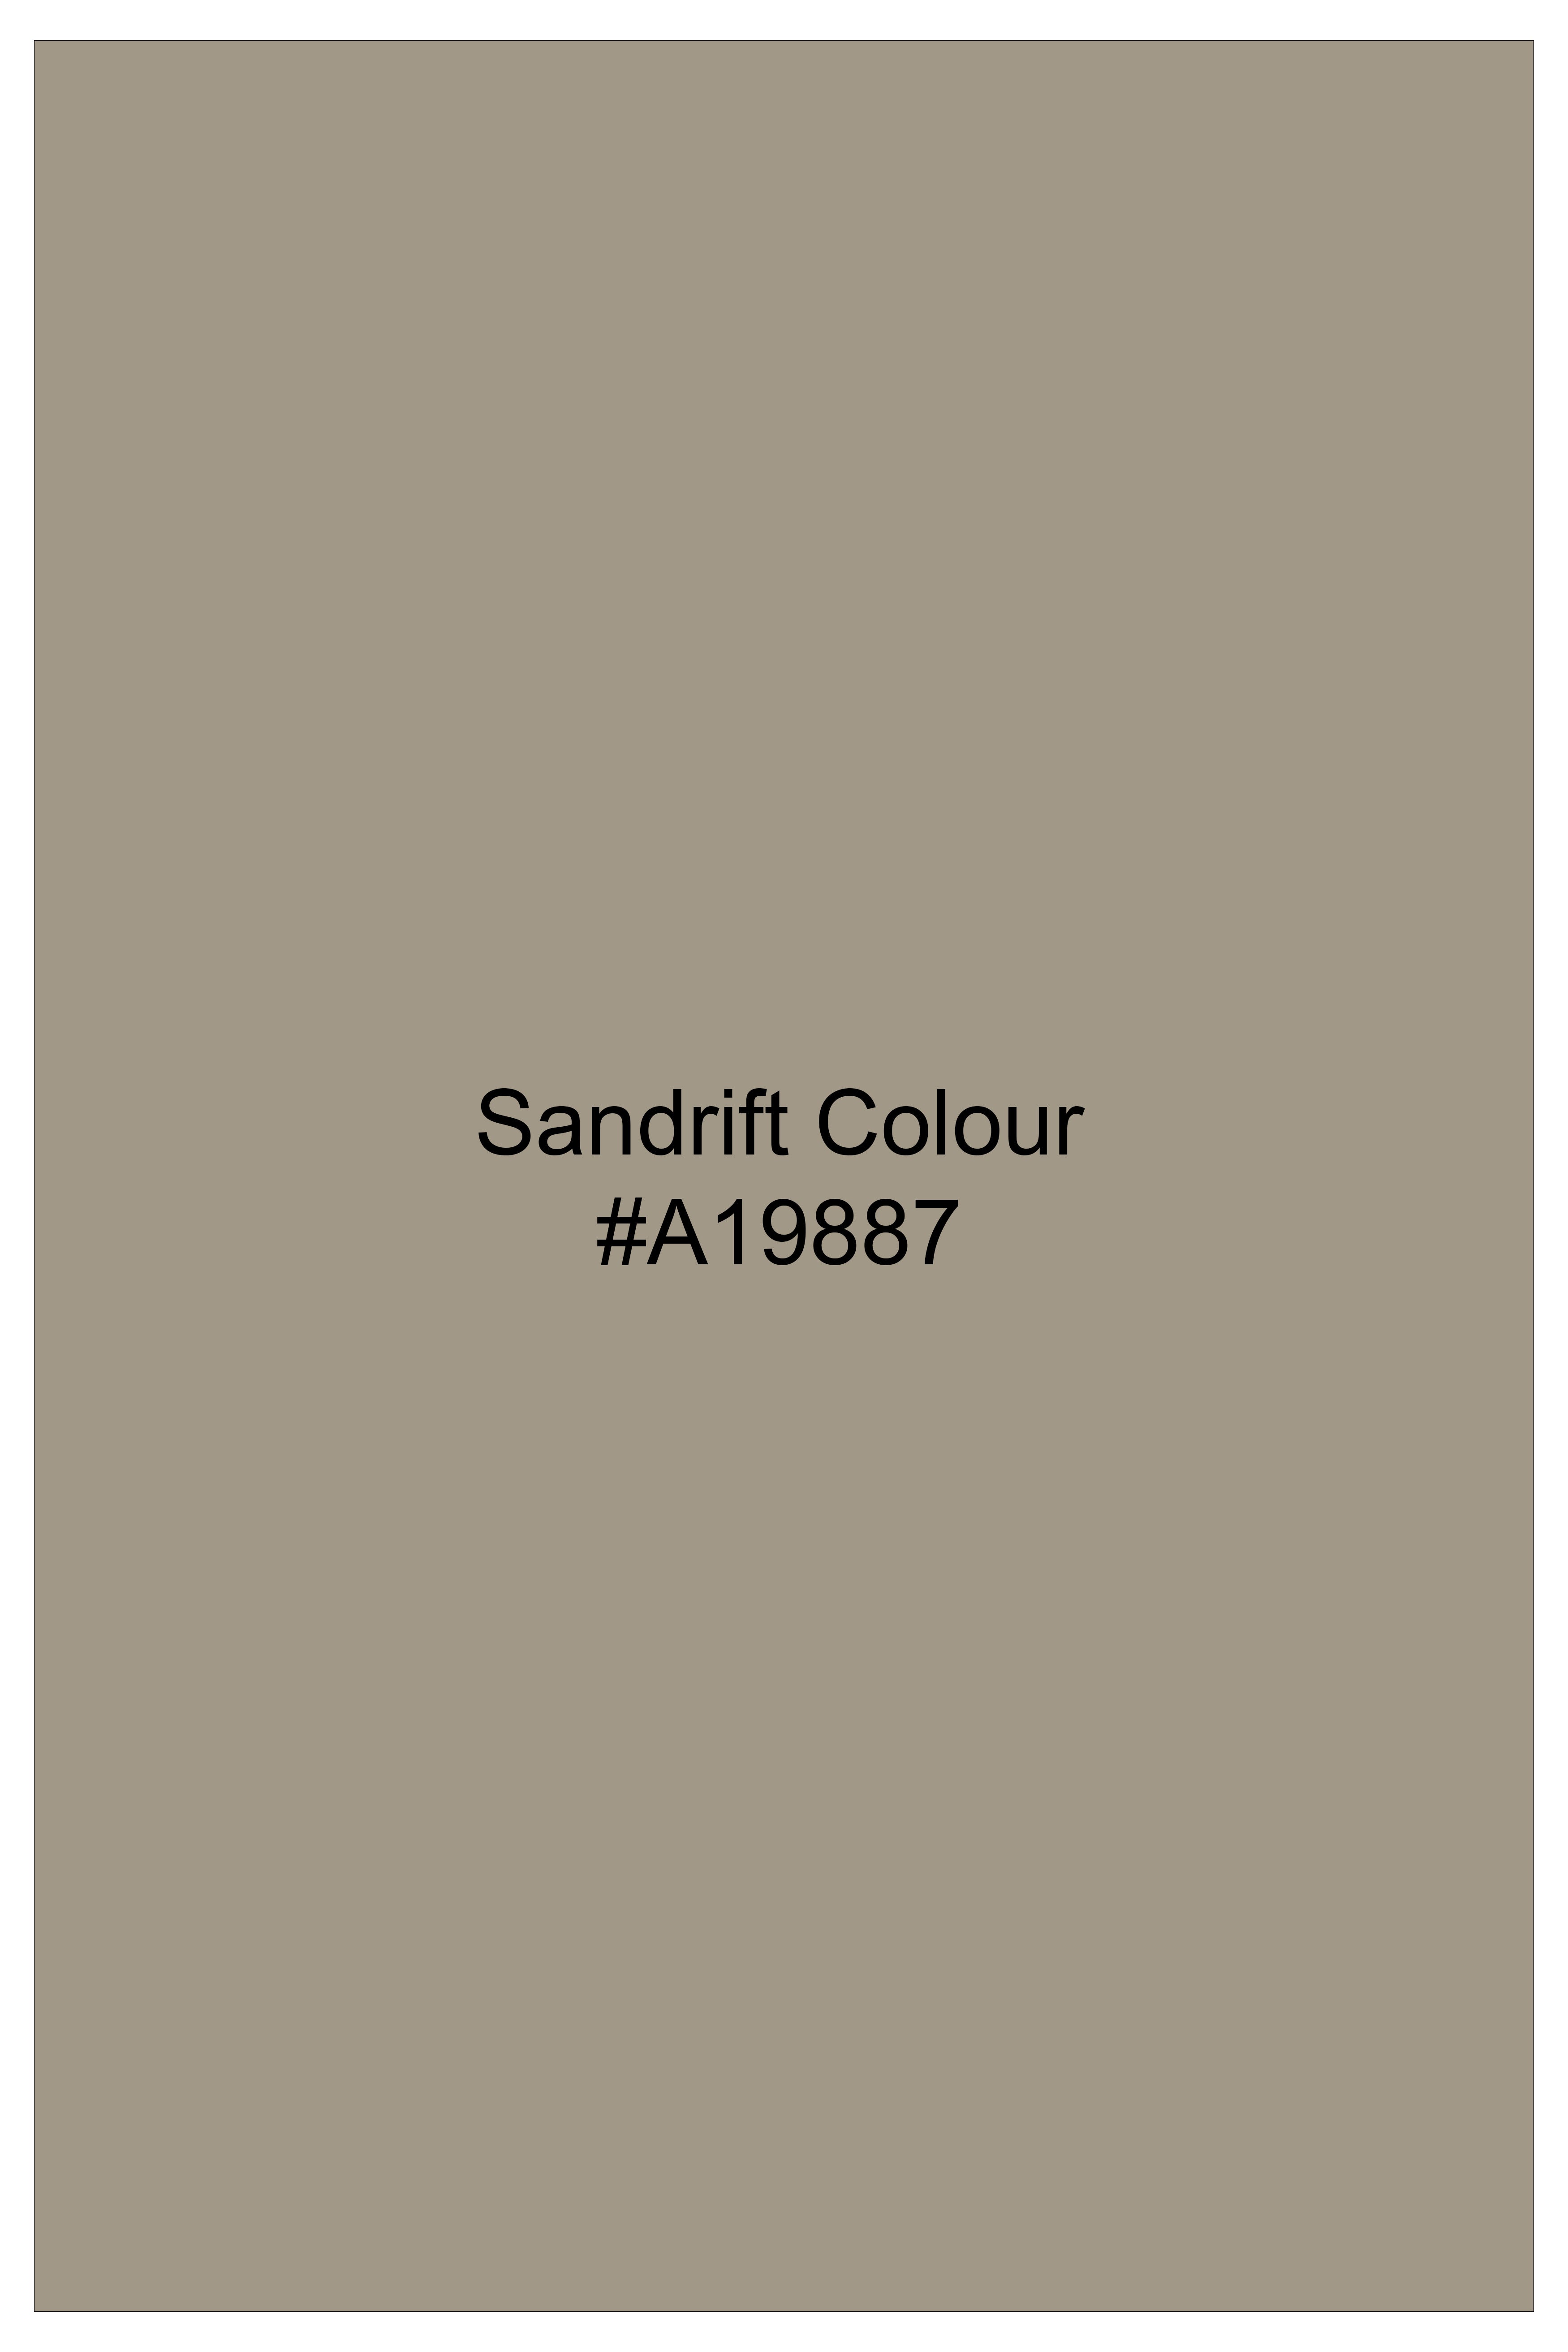 Sandrift Cream Plaid Wool Blend Tuxedo Blazer